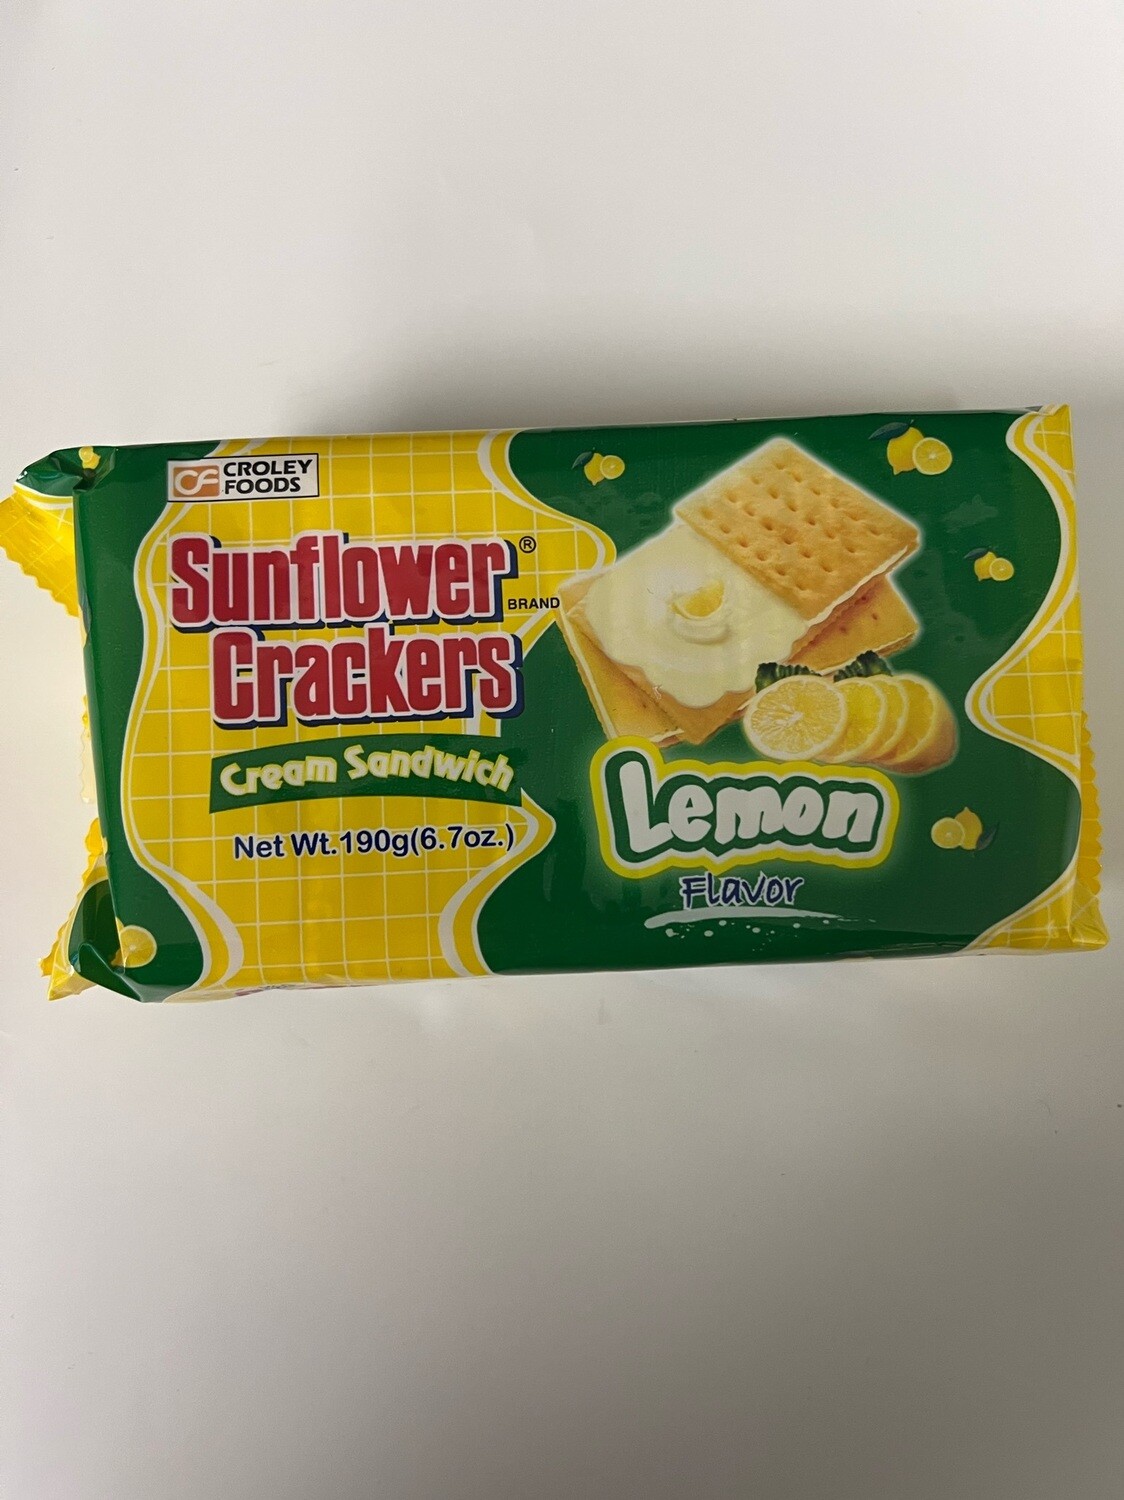 Sunflower crackers lemon flavor pack